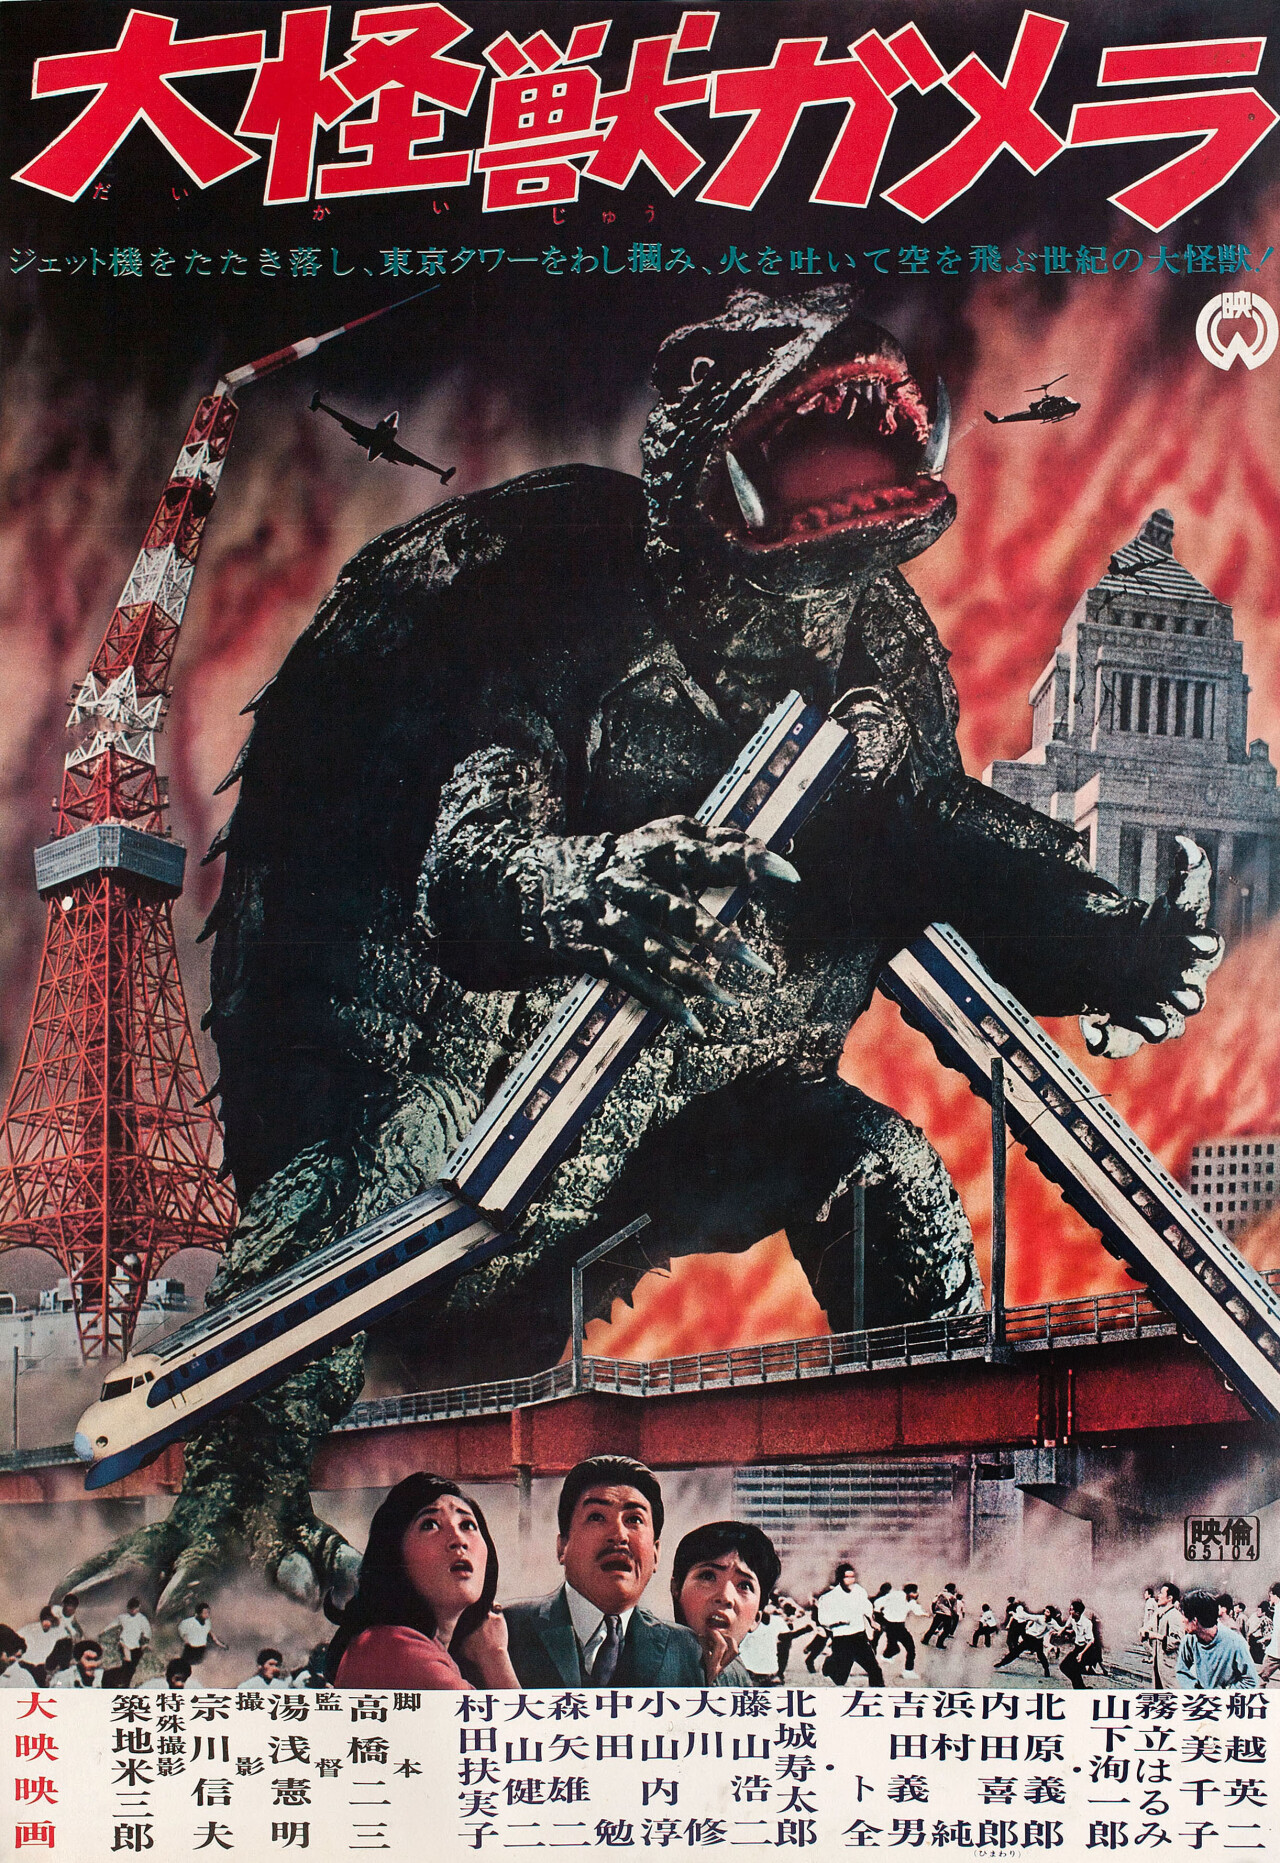 Гамера (Giant Monster Gamera, 1965), режиссёр Нориаки Юаса, японский постер к фильму (ужасы, 1965 год)